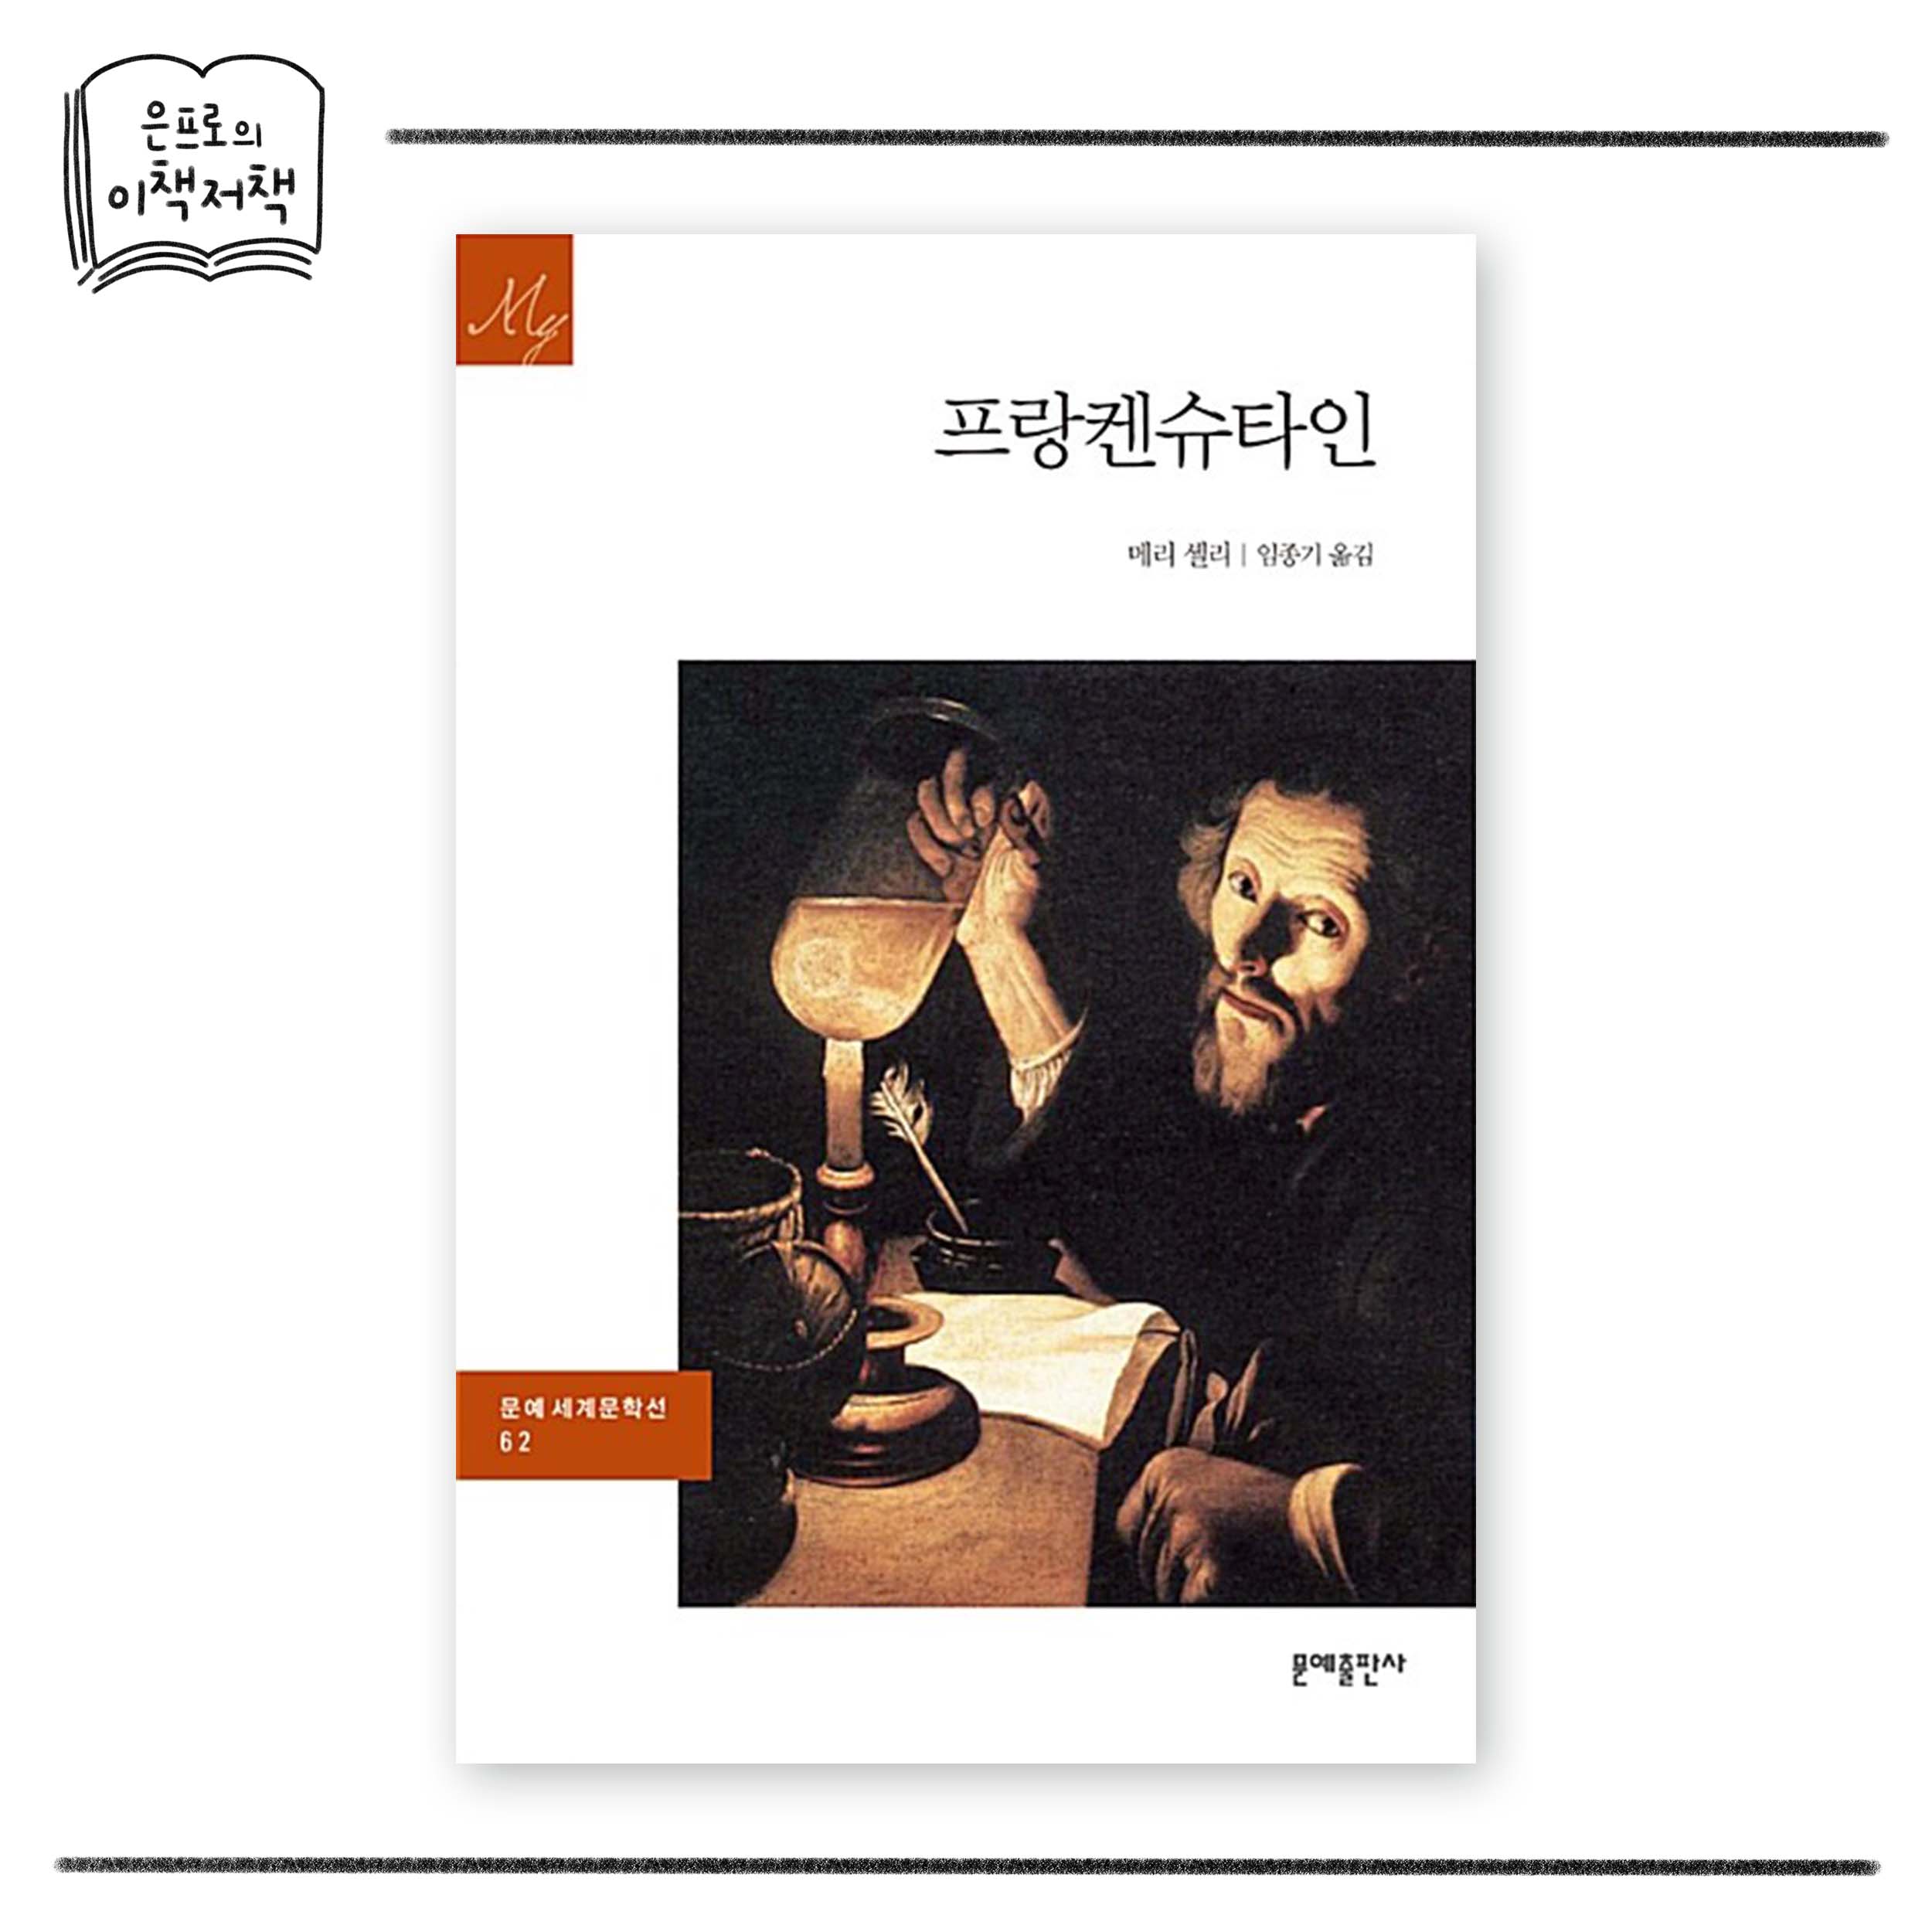 메리 셸리, 『프랑켄슈타인』, 임종기 옮김, 문예출판사, 2018.